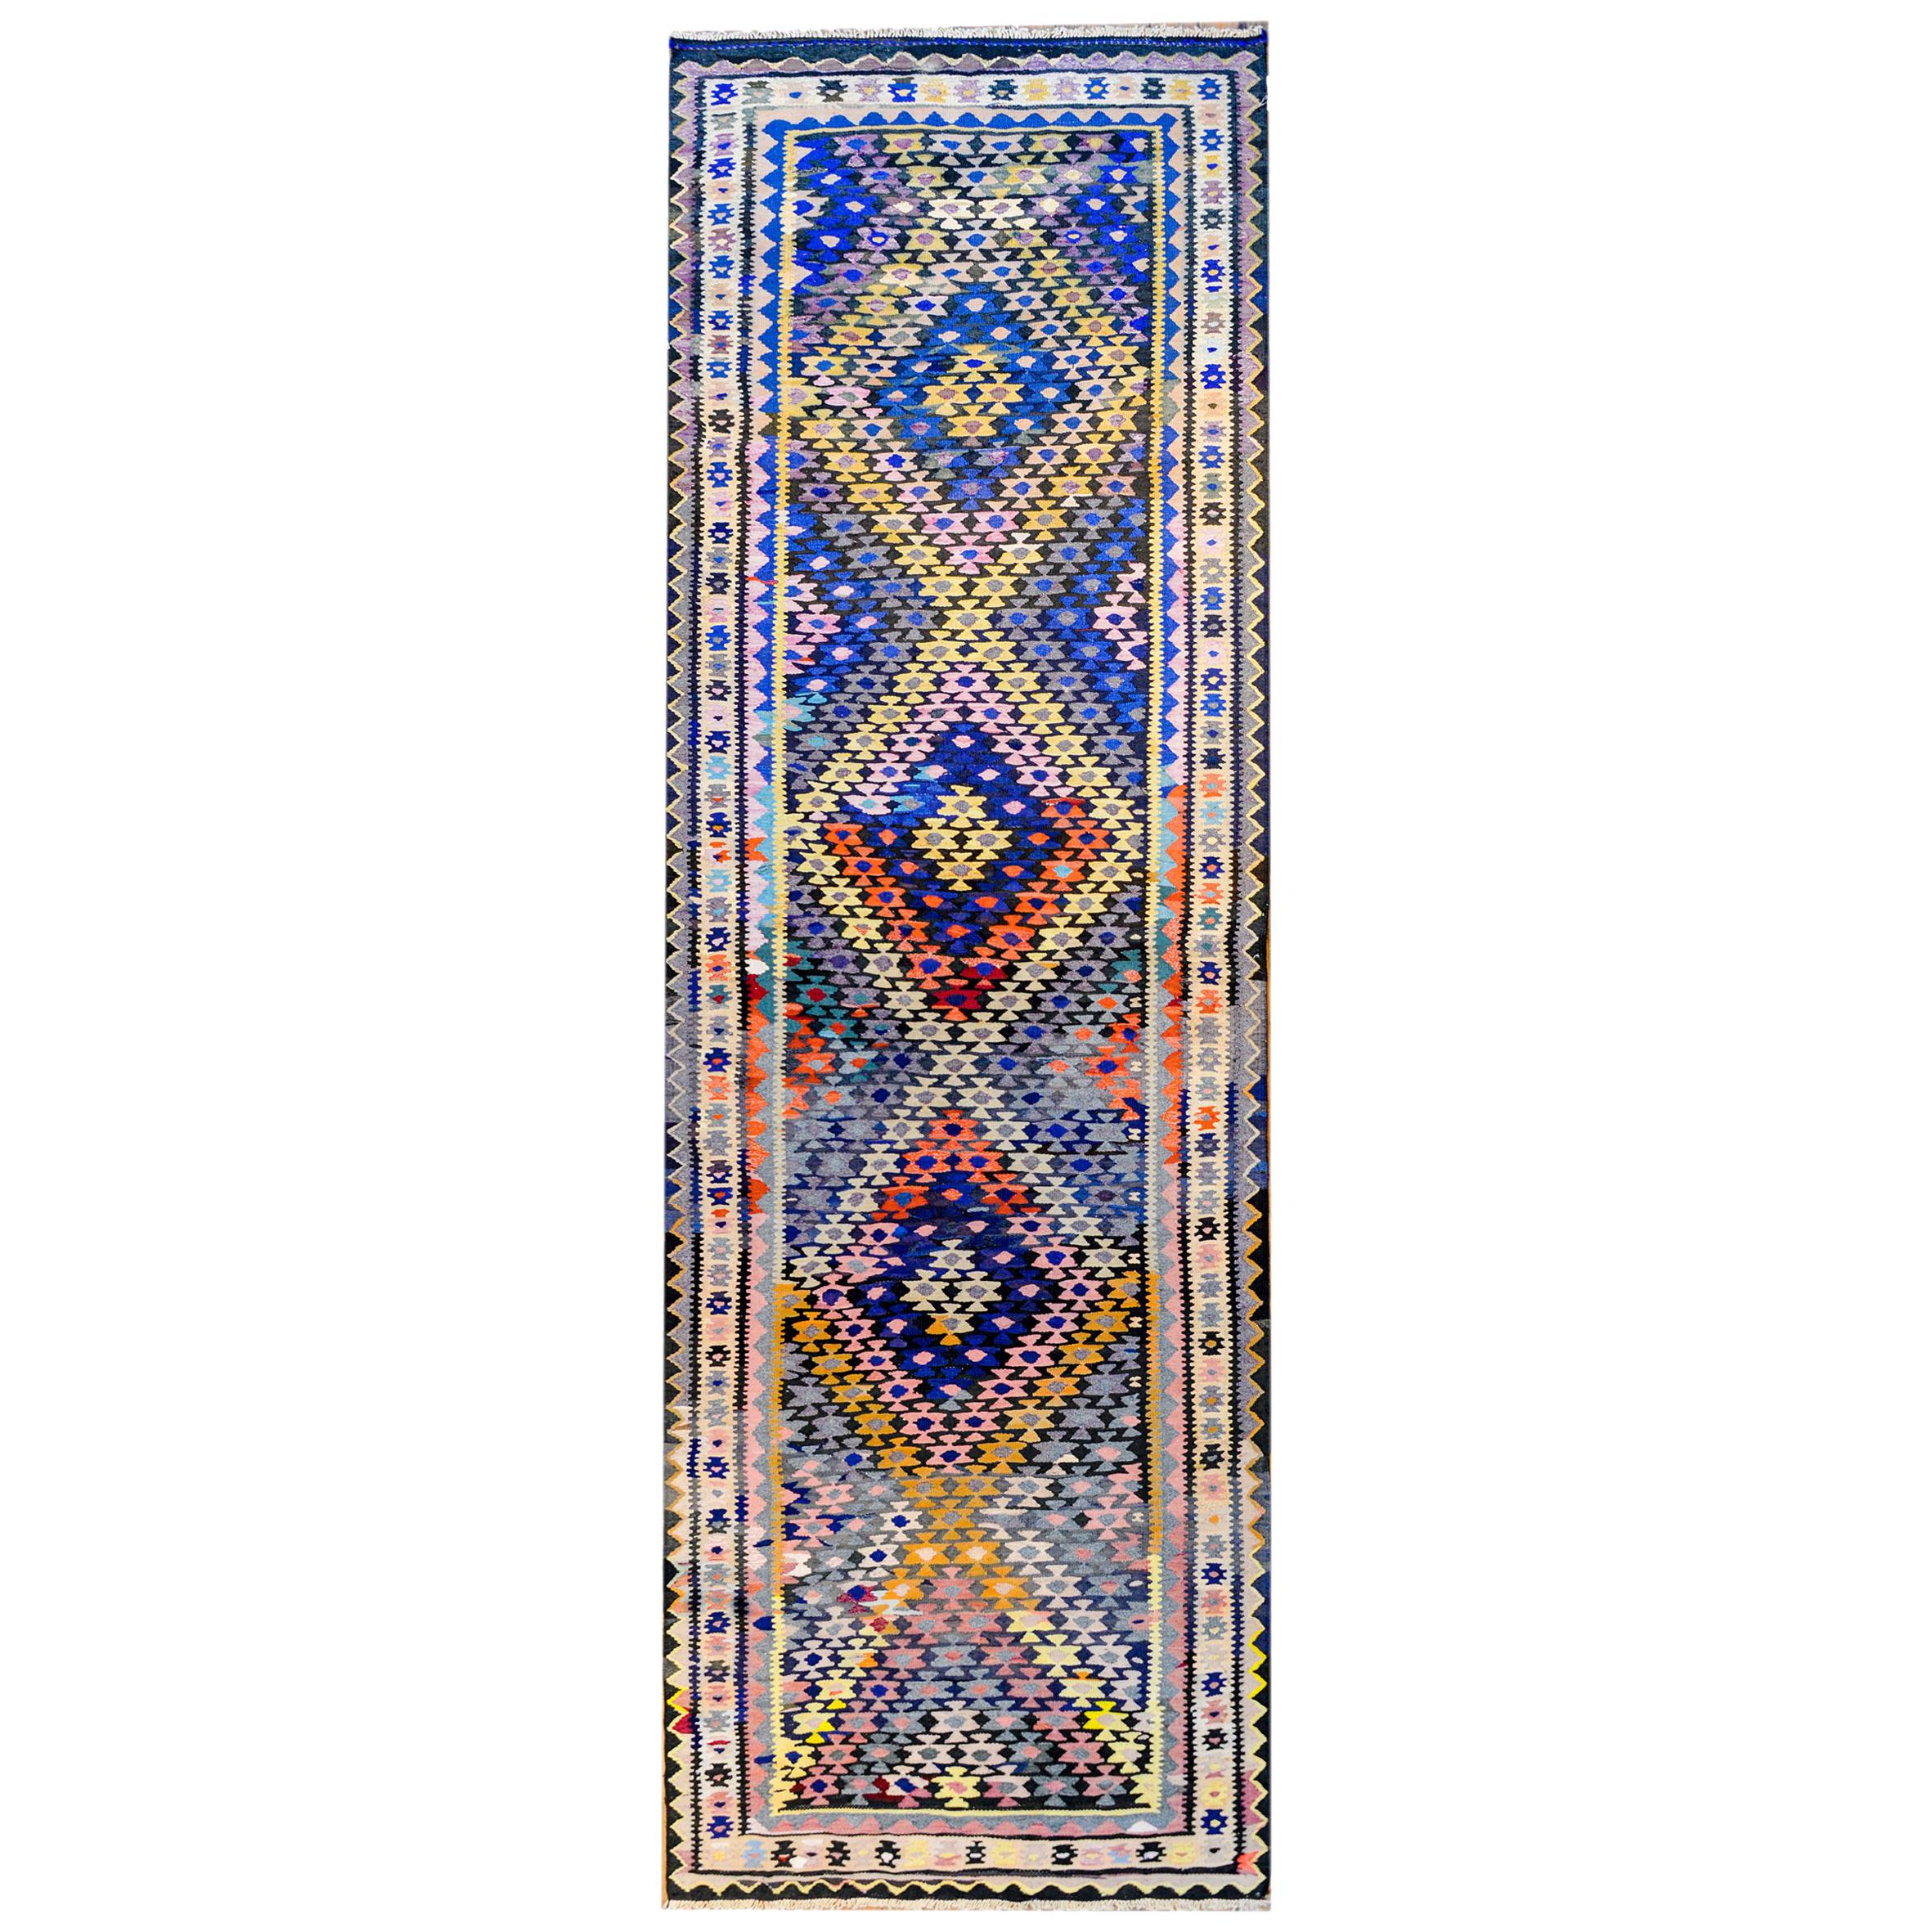 Qazvin-Kilim-Teppich aus dem frühen 20. Jahrhundert